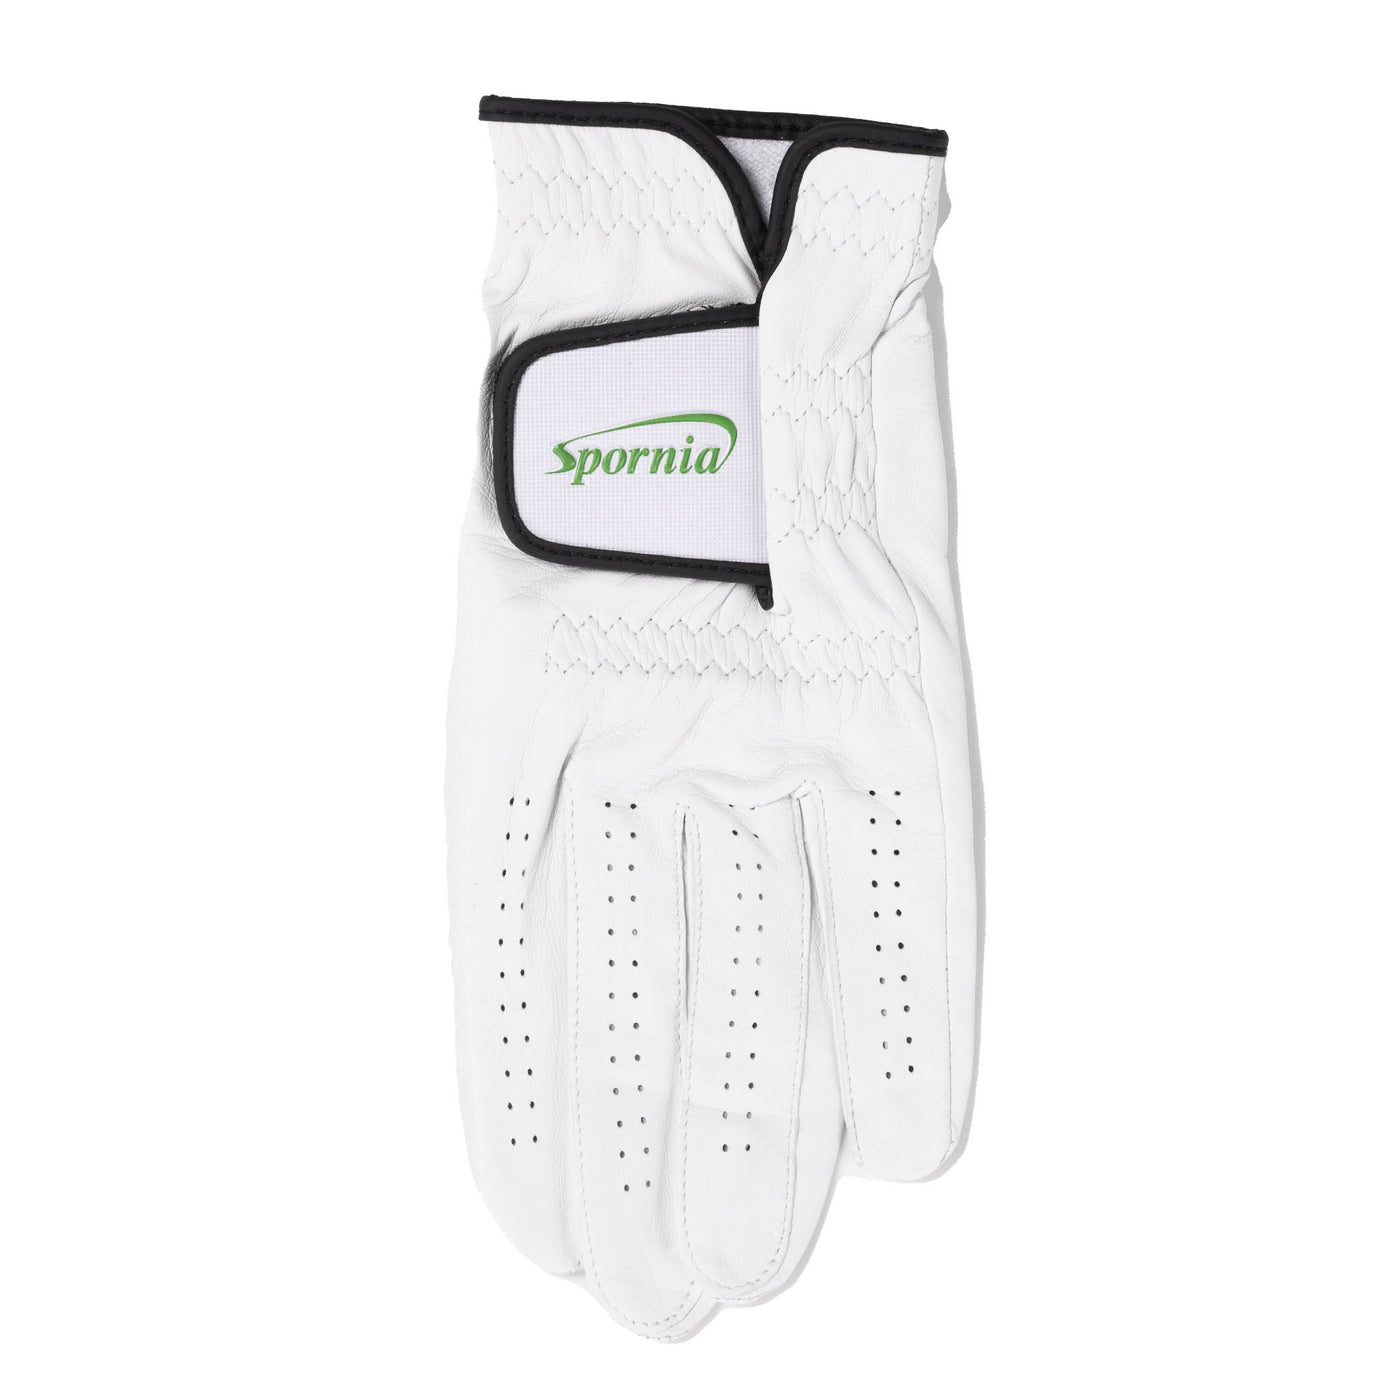 Spornia Tour Authentic Glove